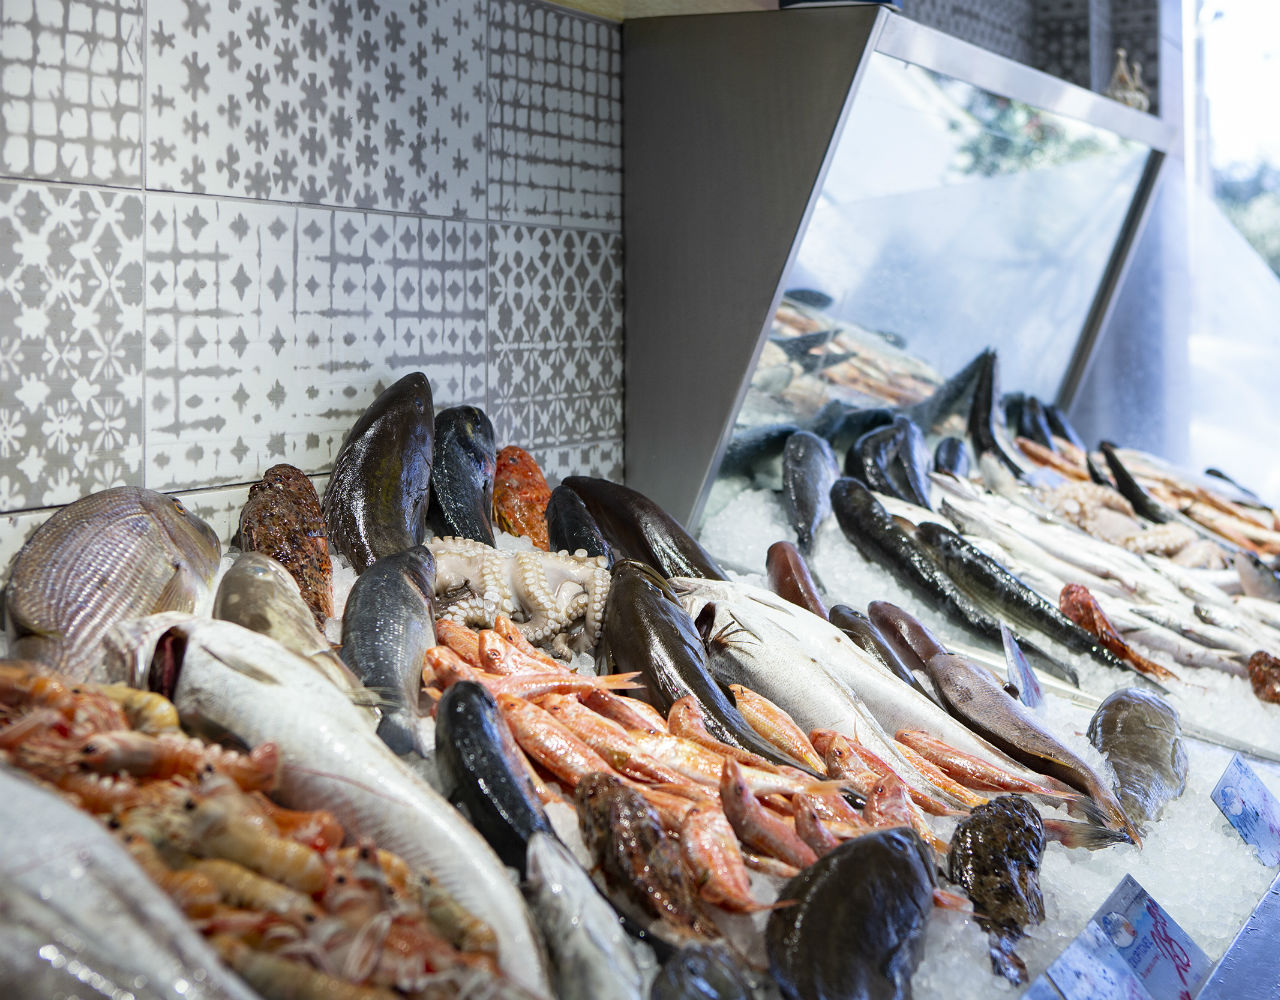 Ψαράκι στην σχάρα, το ιχθυοπωλείο που ετοιμάζει τα πιο νόστιμα θαλασσινά γεύματα